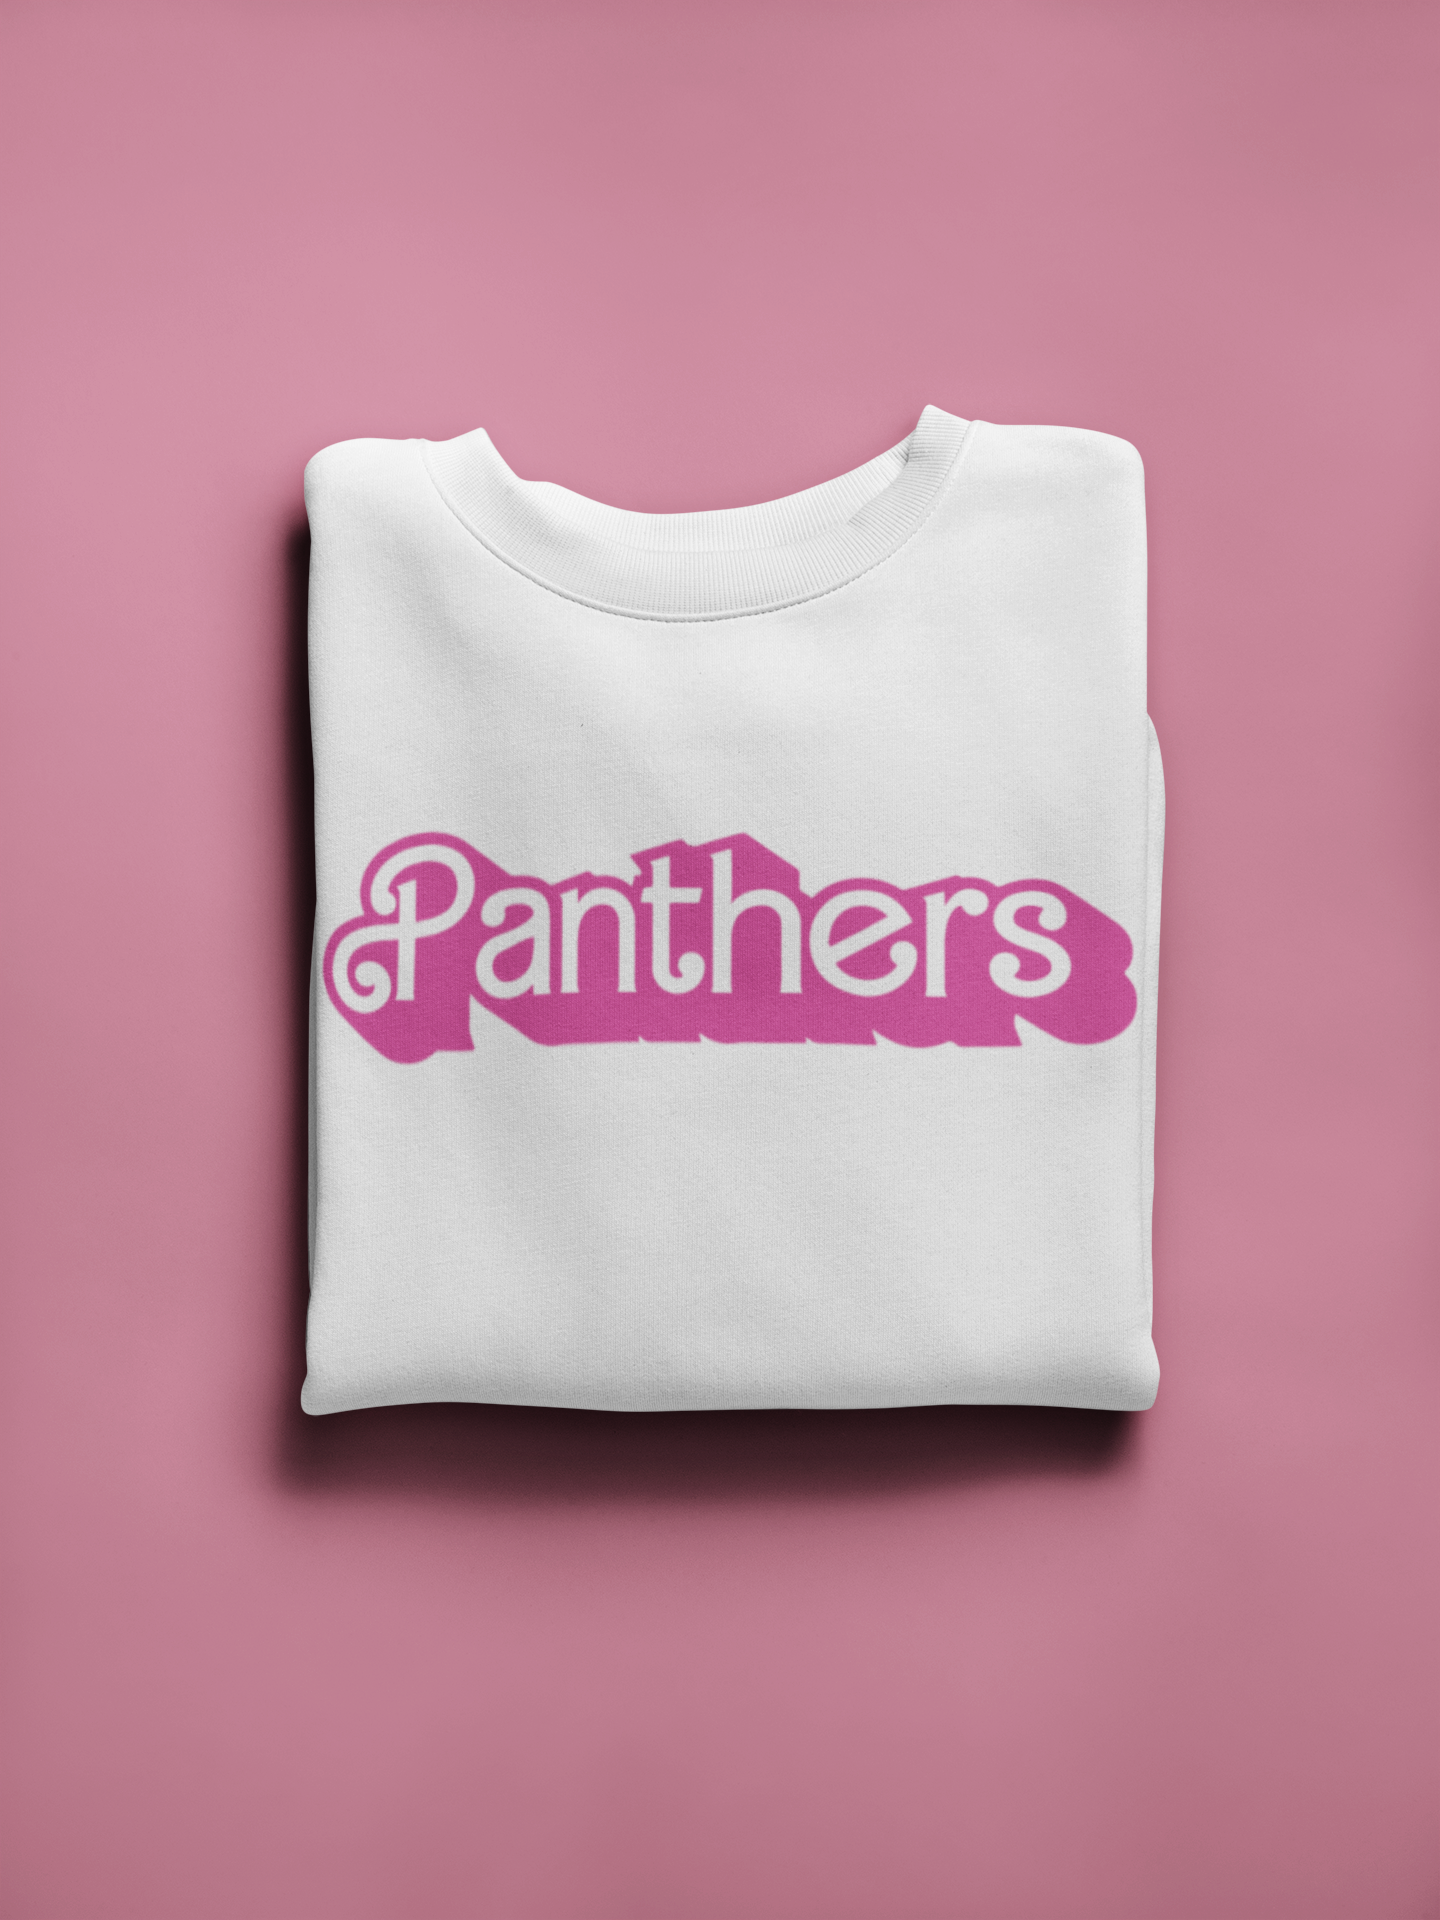 Panthers Mascot Barbie SVG Digital Download Design File